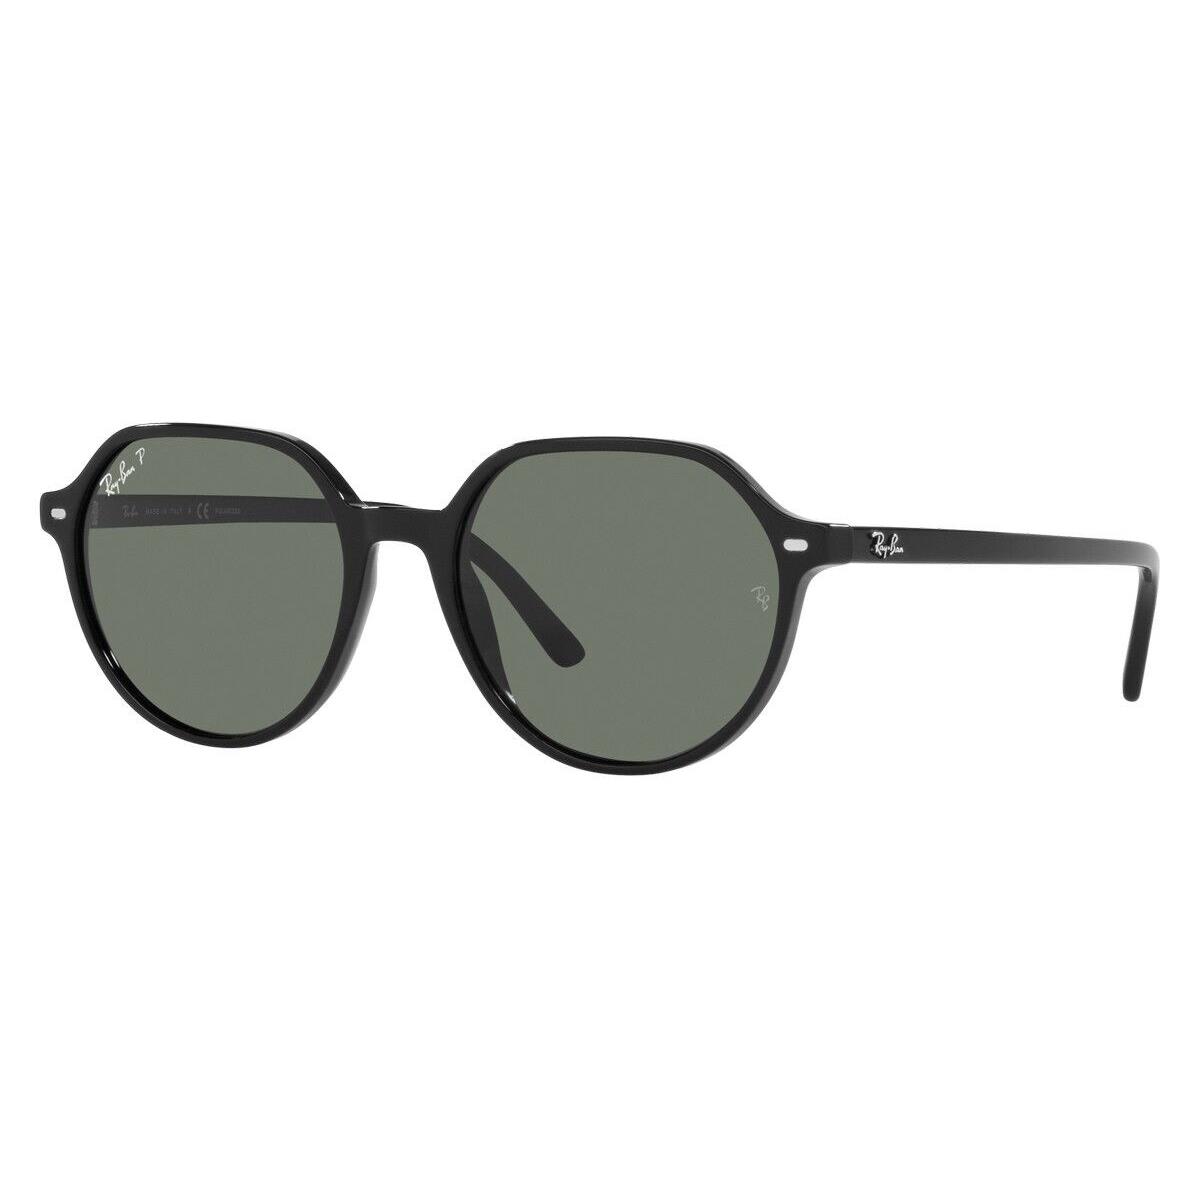 Ray-ban 0RB2195 Sunglasses Unisex Black Square 51mm - Frame: Black, Lens: Polar Green, Model: Black